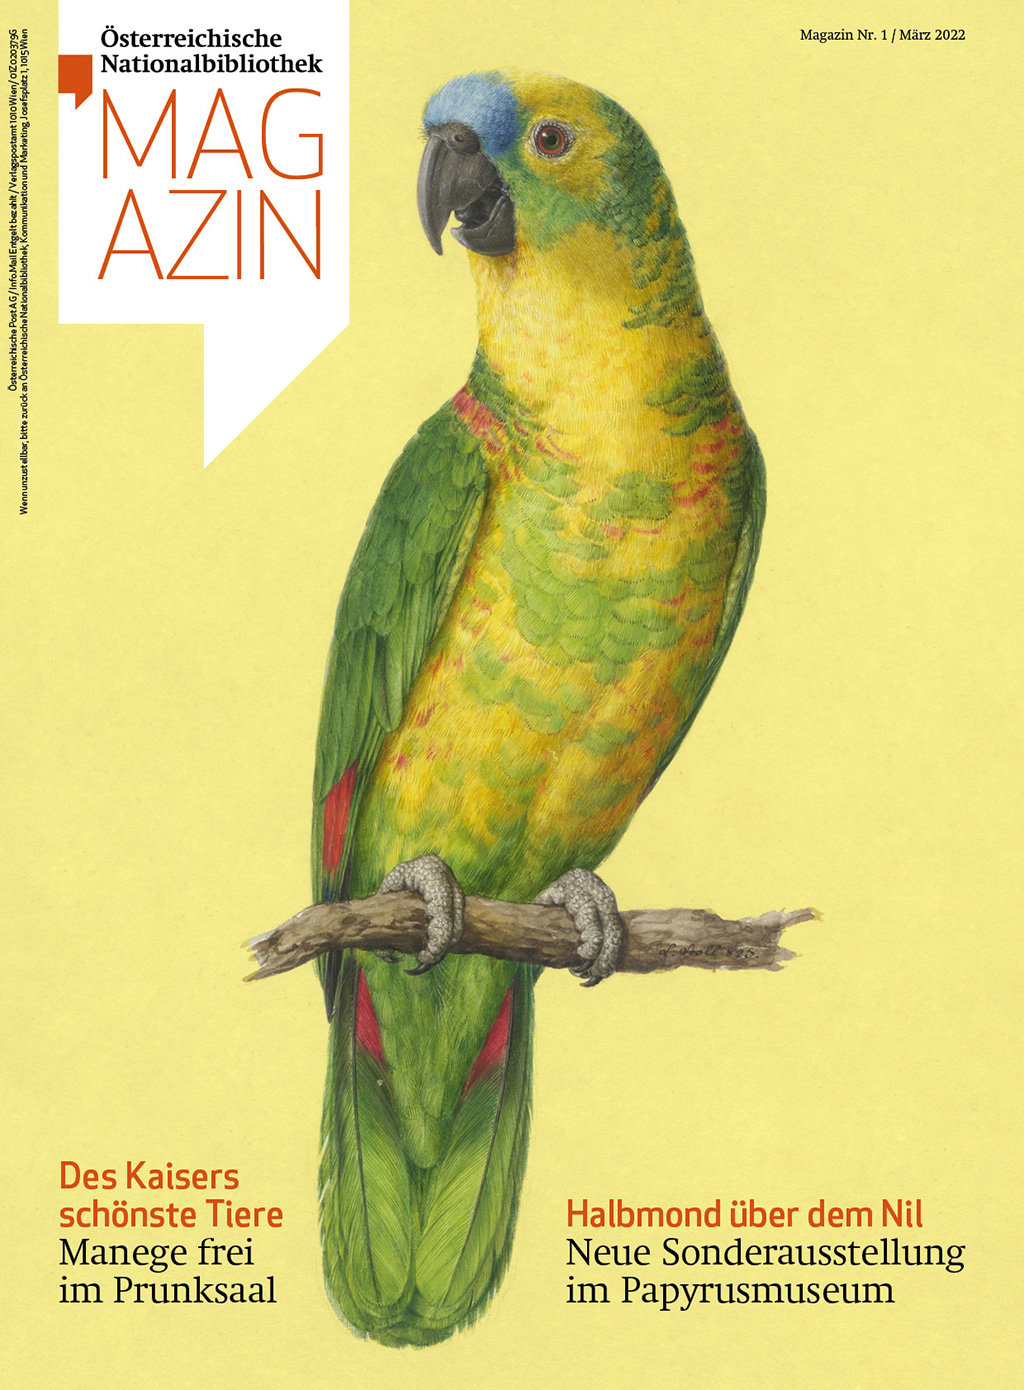 Magazincover mit einem Papagei auf gelbem Grund